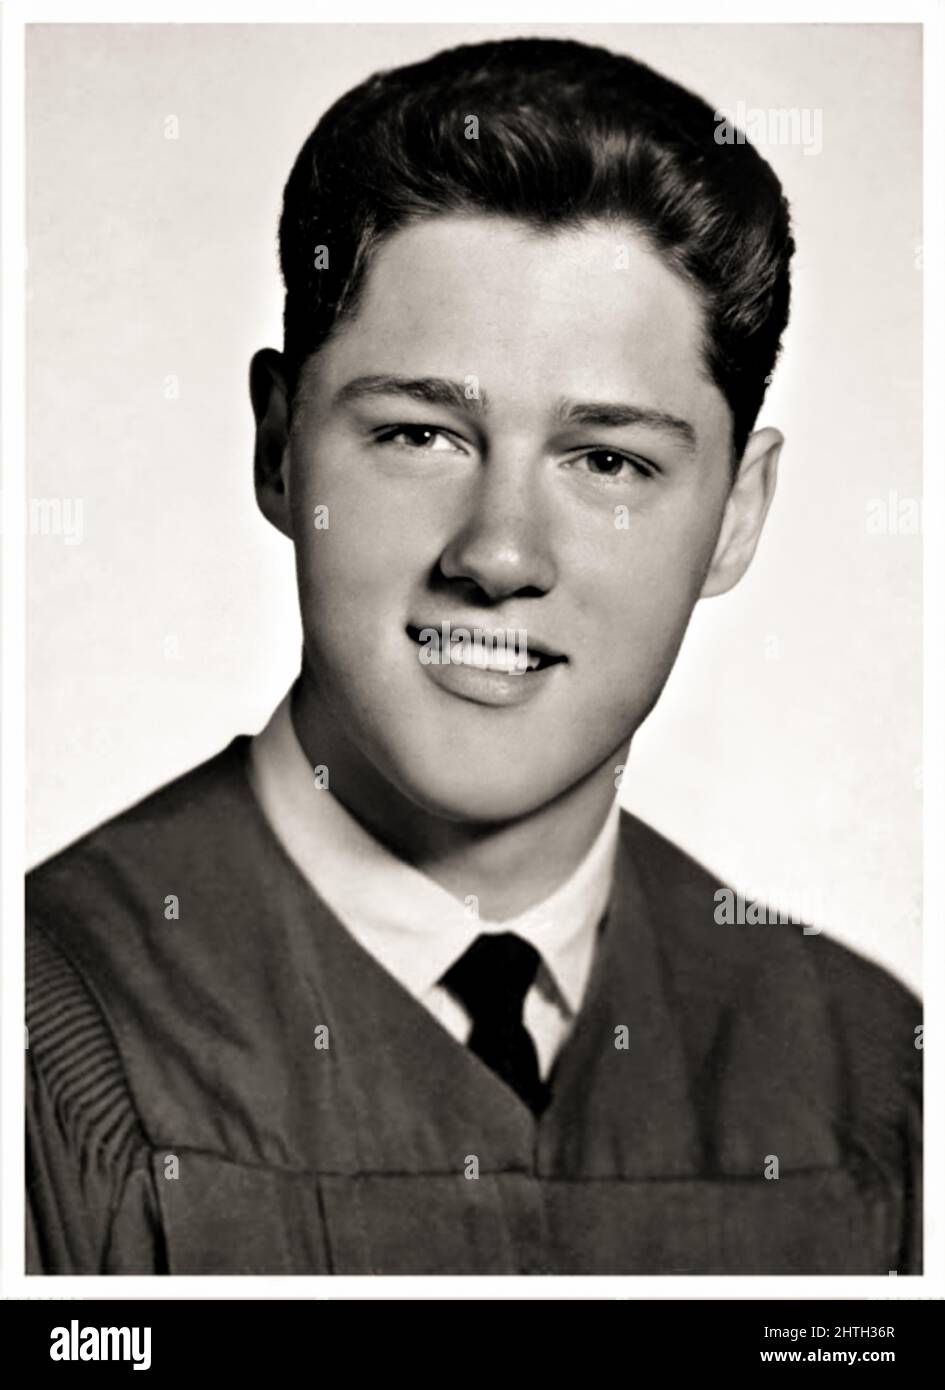 1963 c., EE.UU. : EL POLÍTICO americano BILL CLINTON ( nacido William Jefferson Blythe III el 19 de agosto de 1946 ), Futuro Democrático el Presidente de los Estados Unidos de 42nd de 1993 a 2001. En esta foto cuando era un adolescente joven de 17 años en High School . Fotógrafo desconocido .- Presidente della Repubblica degli STATI UNITI AMÉRICA - POLITICO - POLÍTICA - HISTORIA - FOTO STORICHE - RETRATO - RITRATTO - personalità personalità da giovane giovani - da bambino bambini - personalidades de la personalidad cuando era joven - niño - niños - infanzia - infancia - smile - sorriso - ragazzo --- Foto de stock